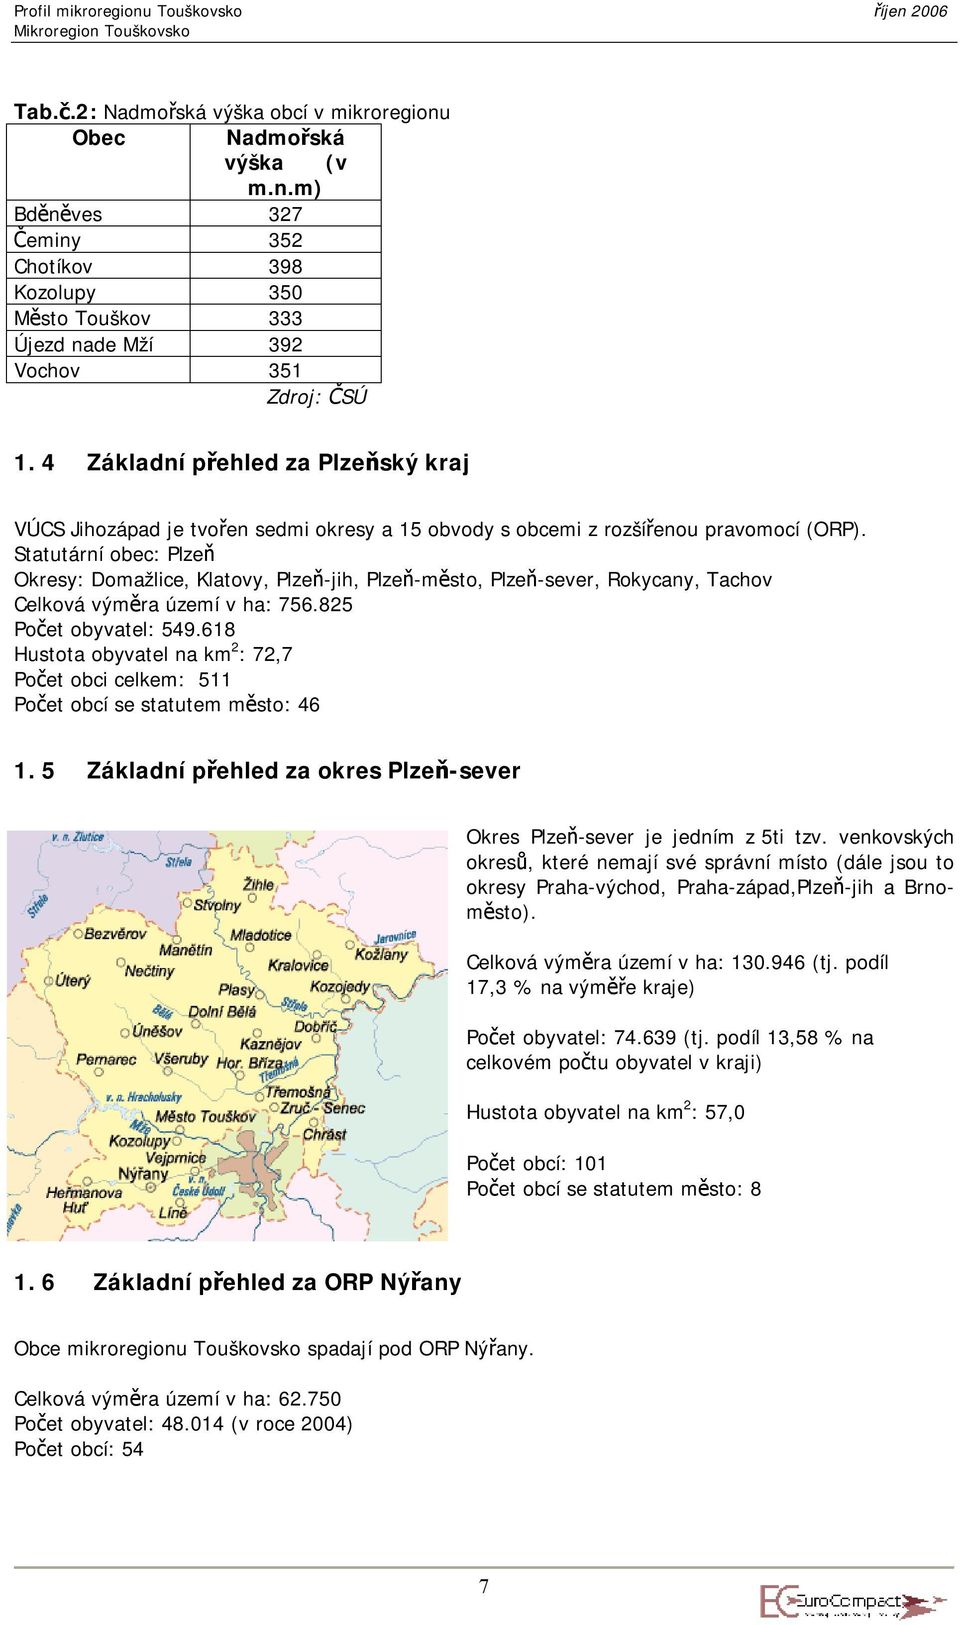 Statutární obec: Plzeň Okresy: Domažlice, Klatovy, Plzeň-jih, Plzeň-město, Plzeň-sever, Rokycany, Tachov Celková výměra území v ha: 756.825 Počet obyvatel: 549.